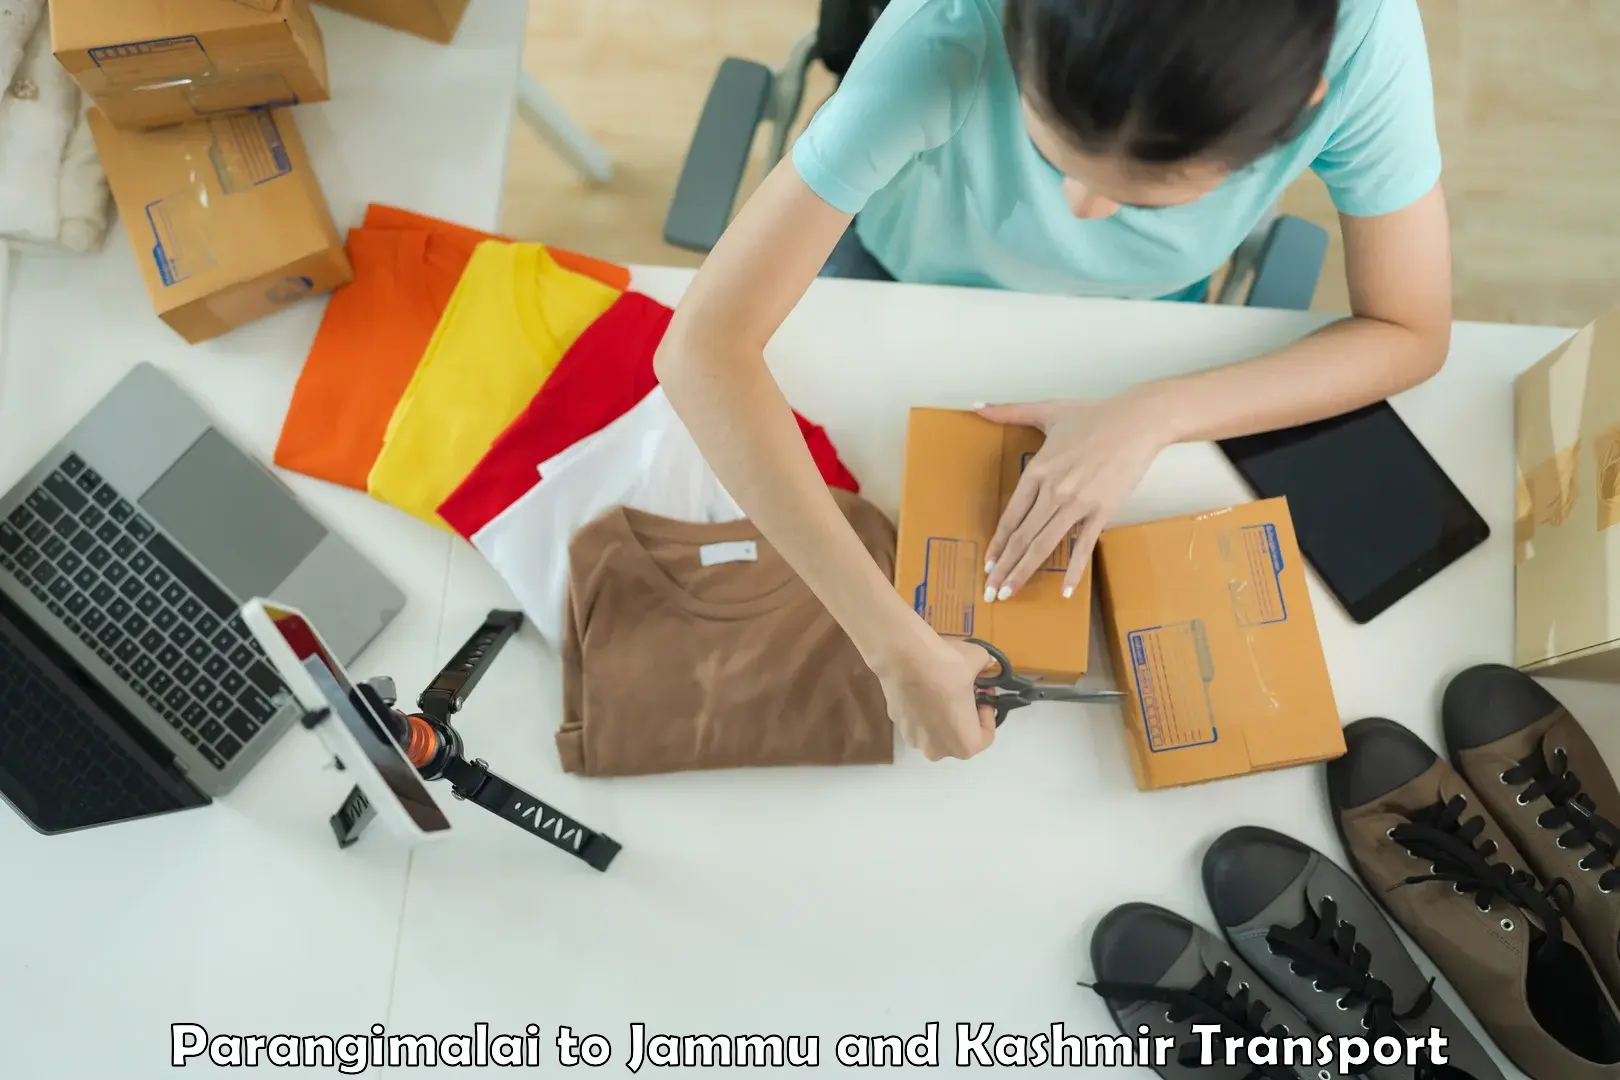 Furniture transport service Parangimalai to Nagrota